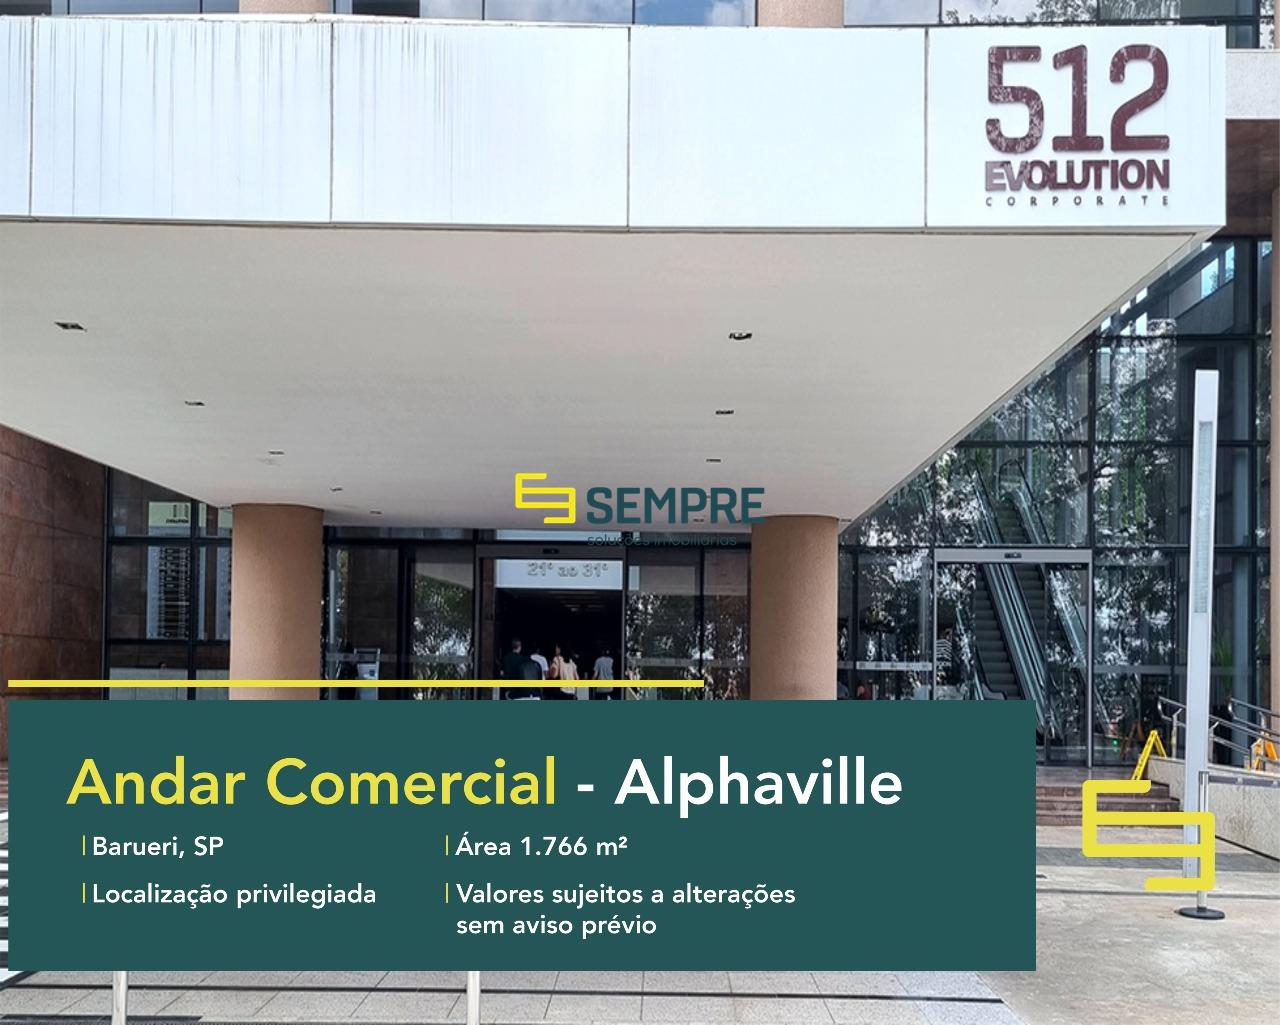 Laje corporativa no Edifício Evolution Corporate em São Paulo, excelente localização. O estabelecimento comercial conta com área de 1.766 m².